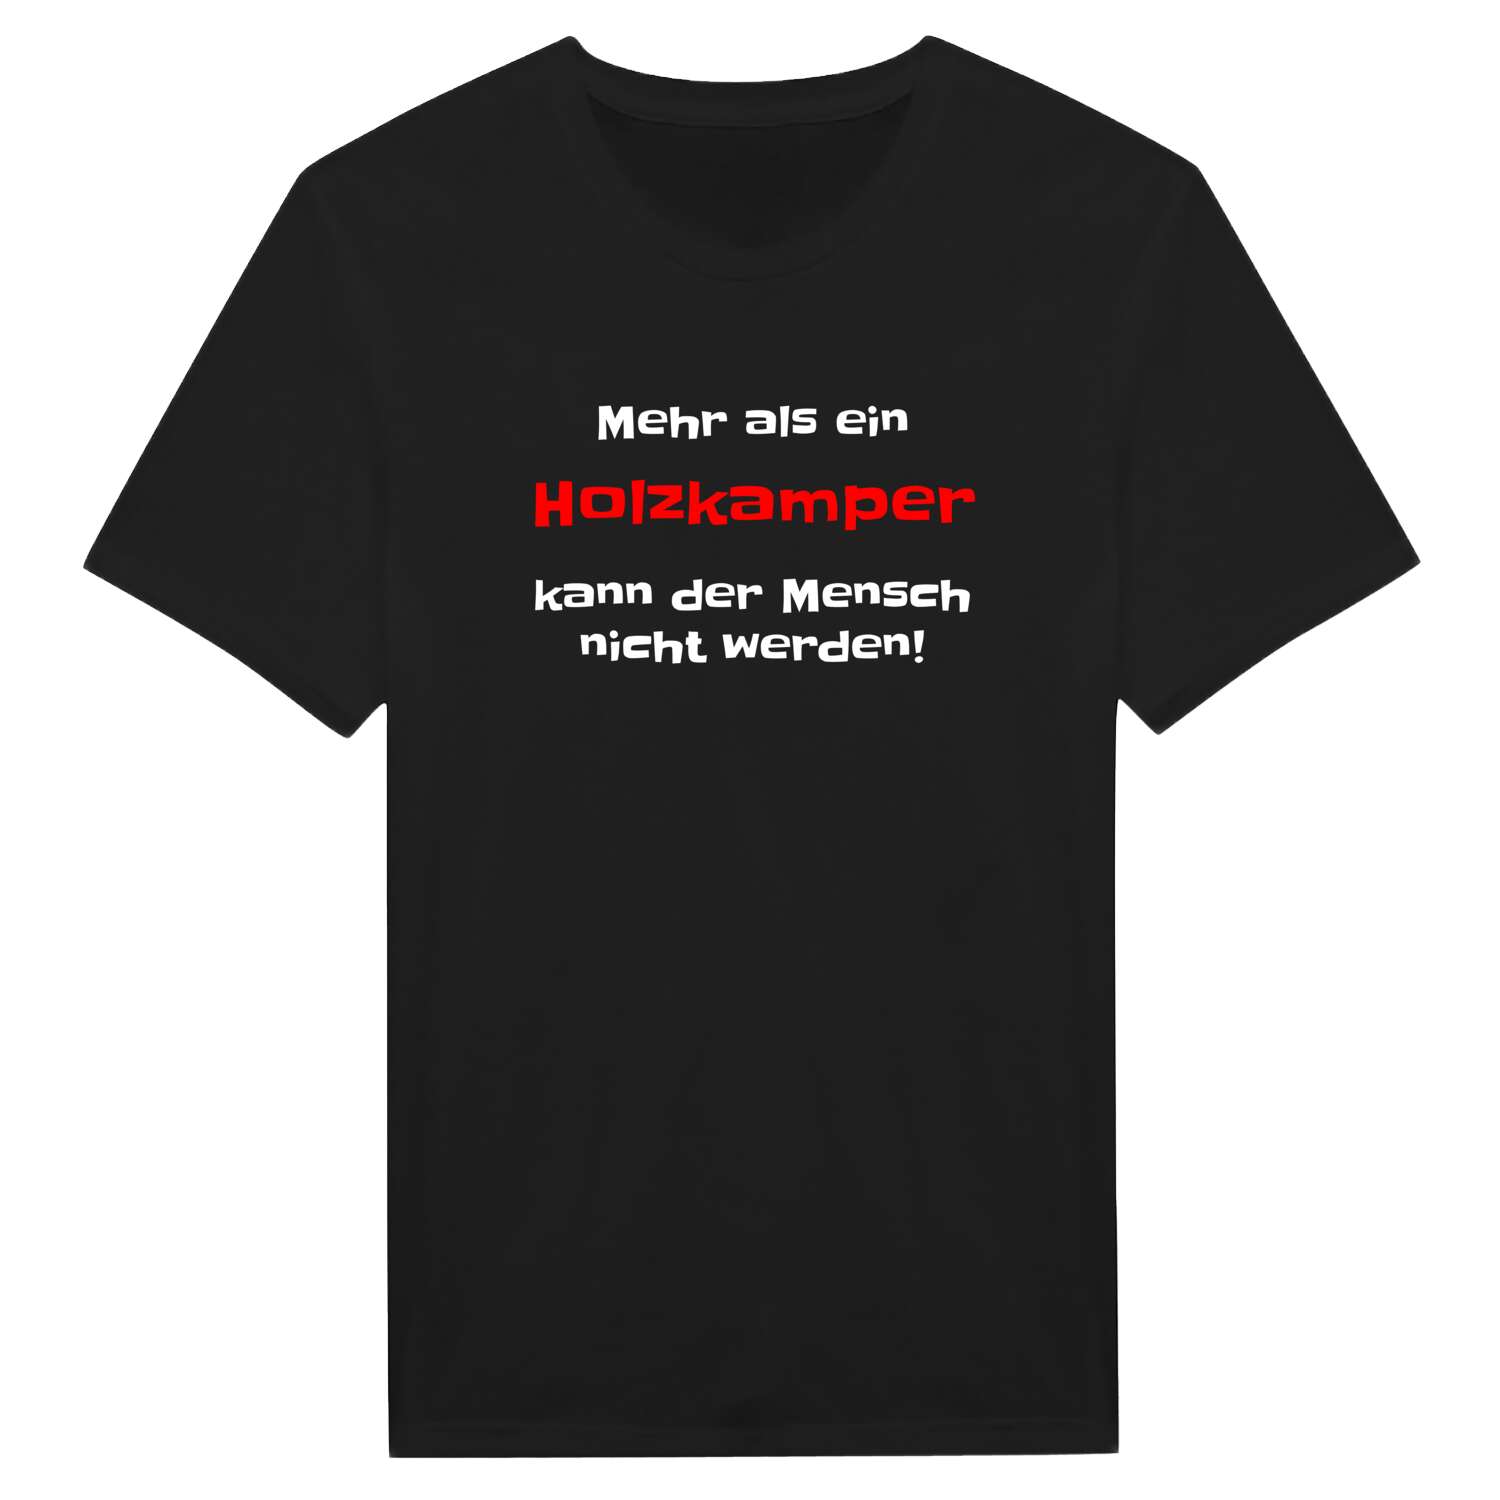 Holzkamp T-Shirt »Mehr als ein«